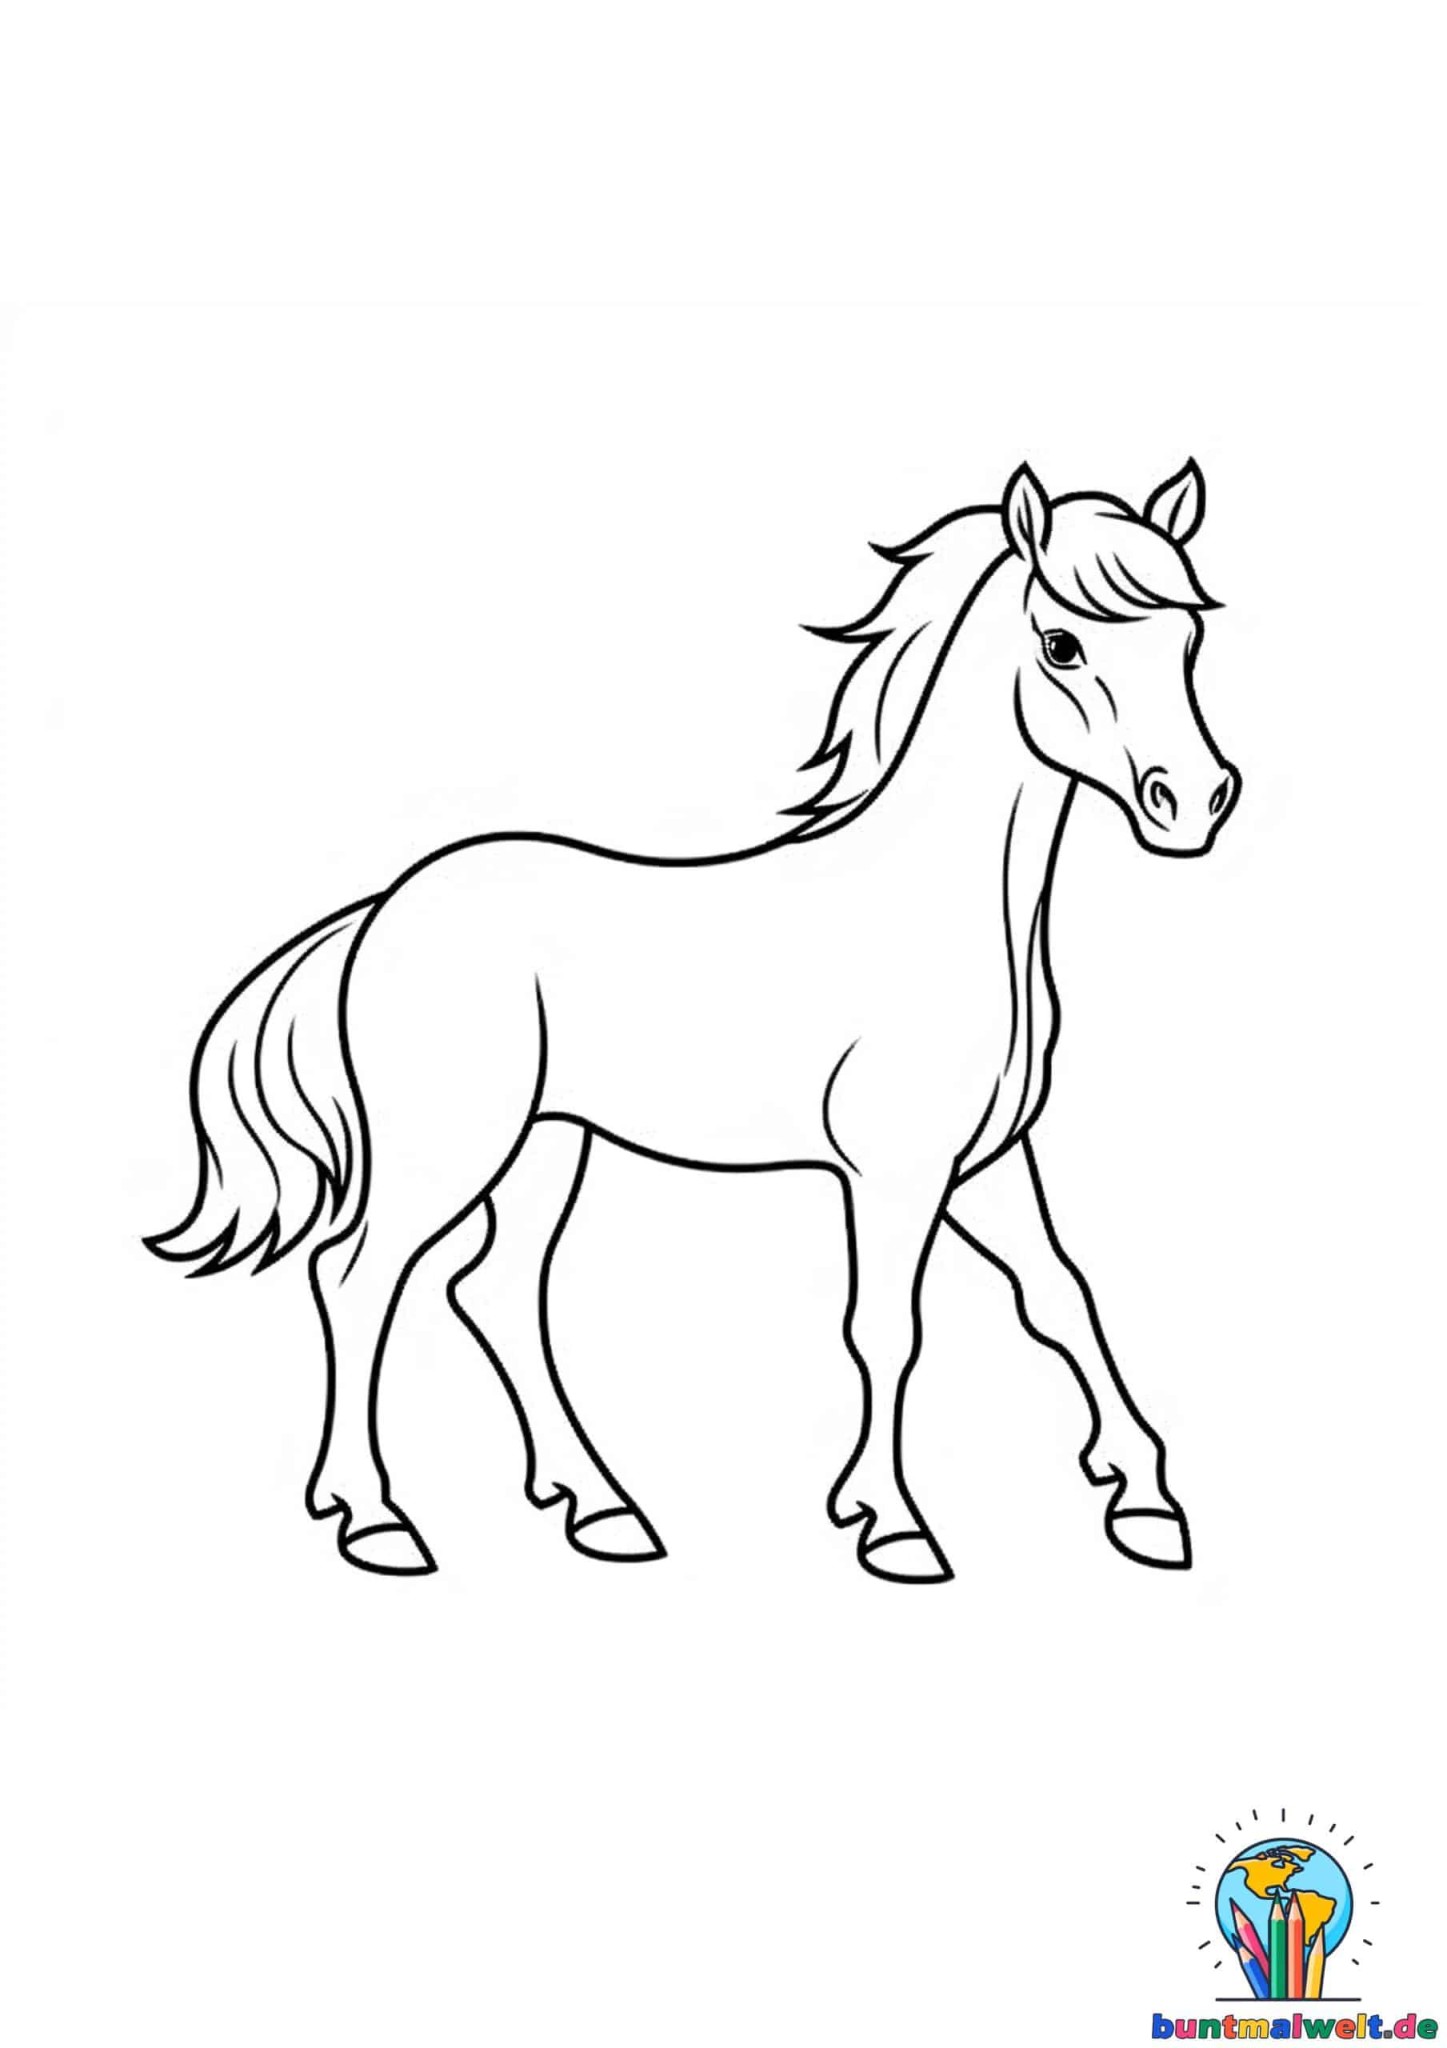 Ausmalbilder Pferde zum Ausdrucken - komplett kostenlos!